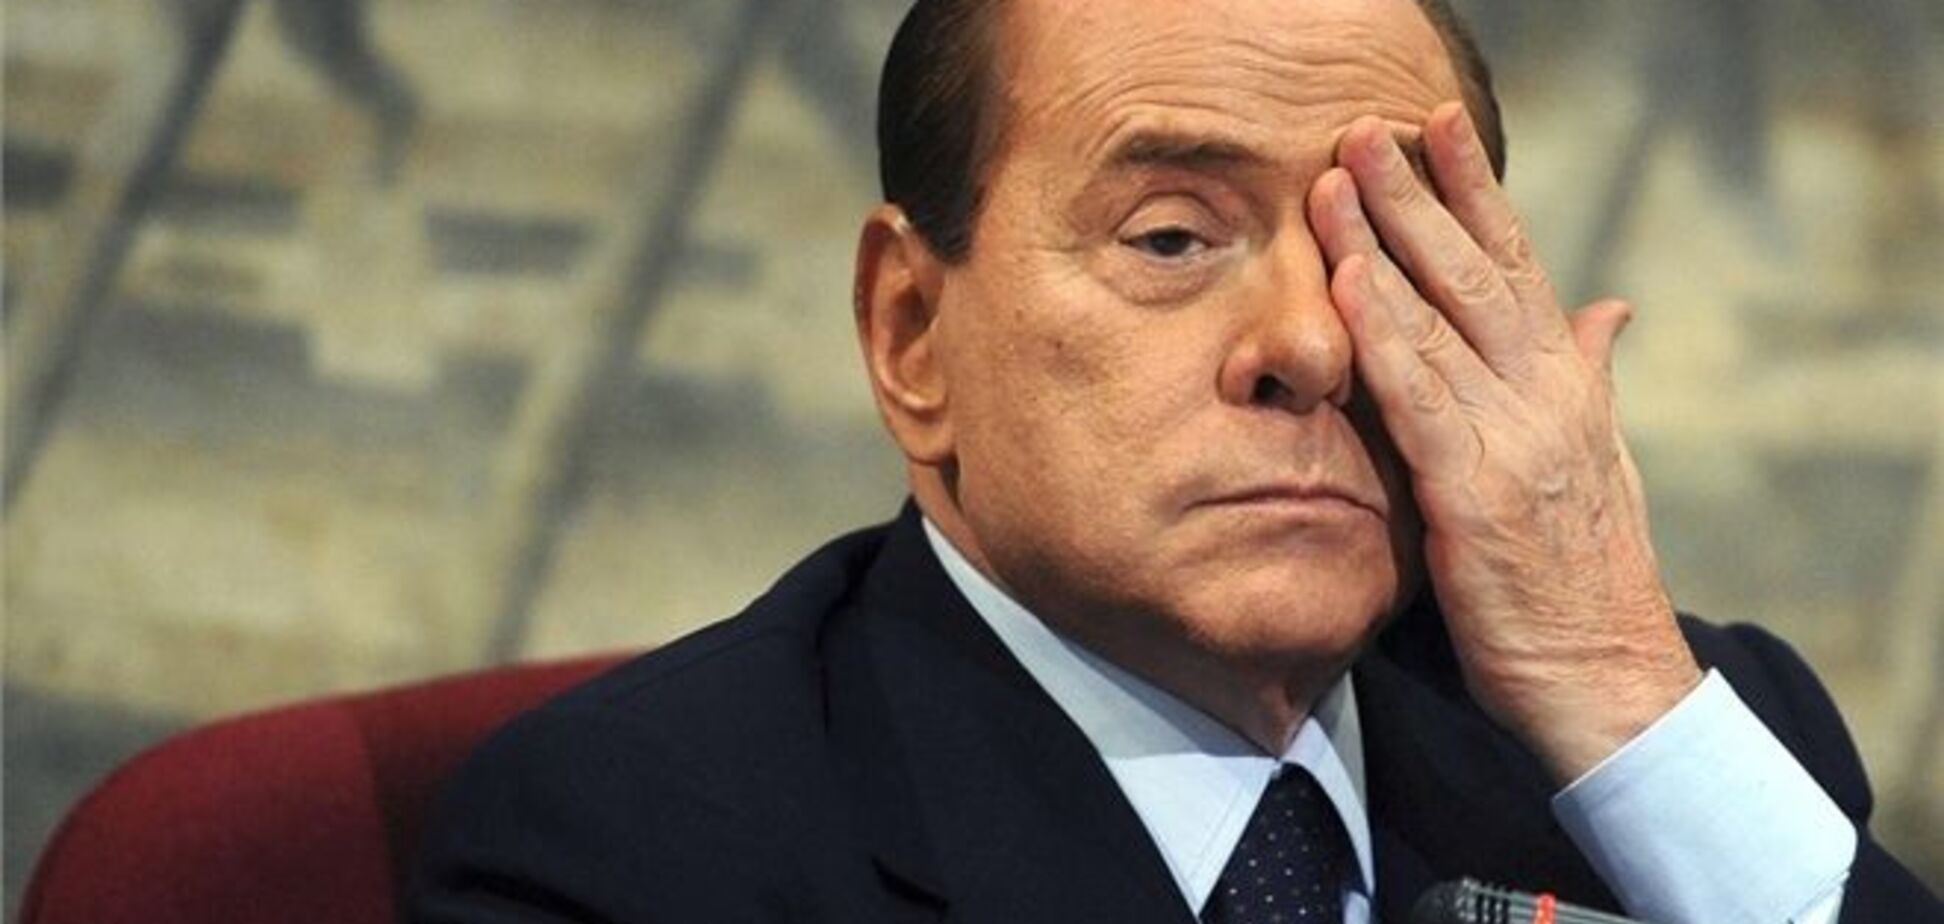 Вік врятує Берлусконі від тюремного терміну